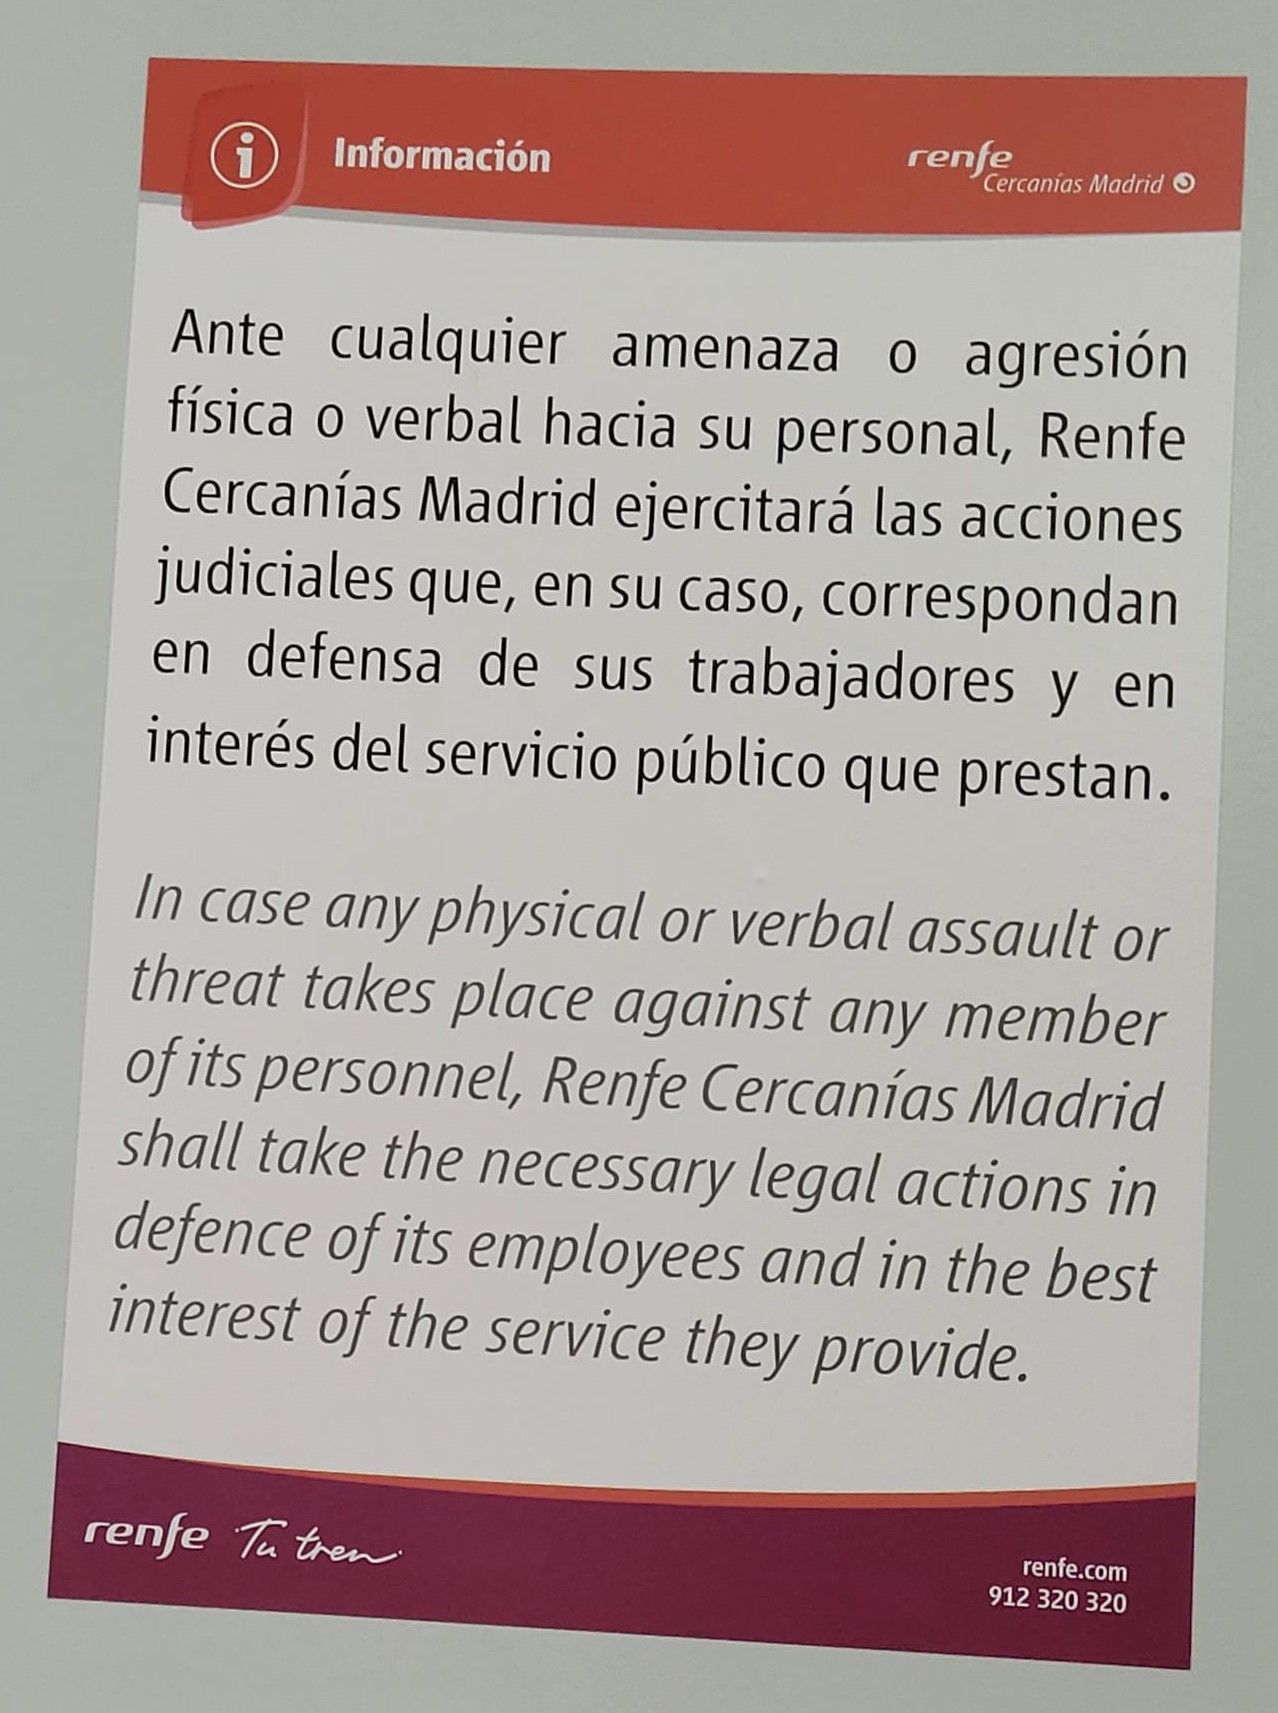 Cártel informativo de Renfe en el servicio de Cernacías de Madrid (Fuente Alternativa Sindical)